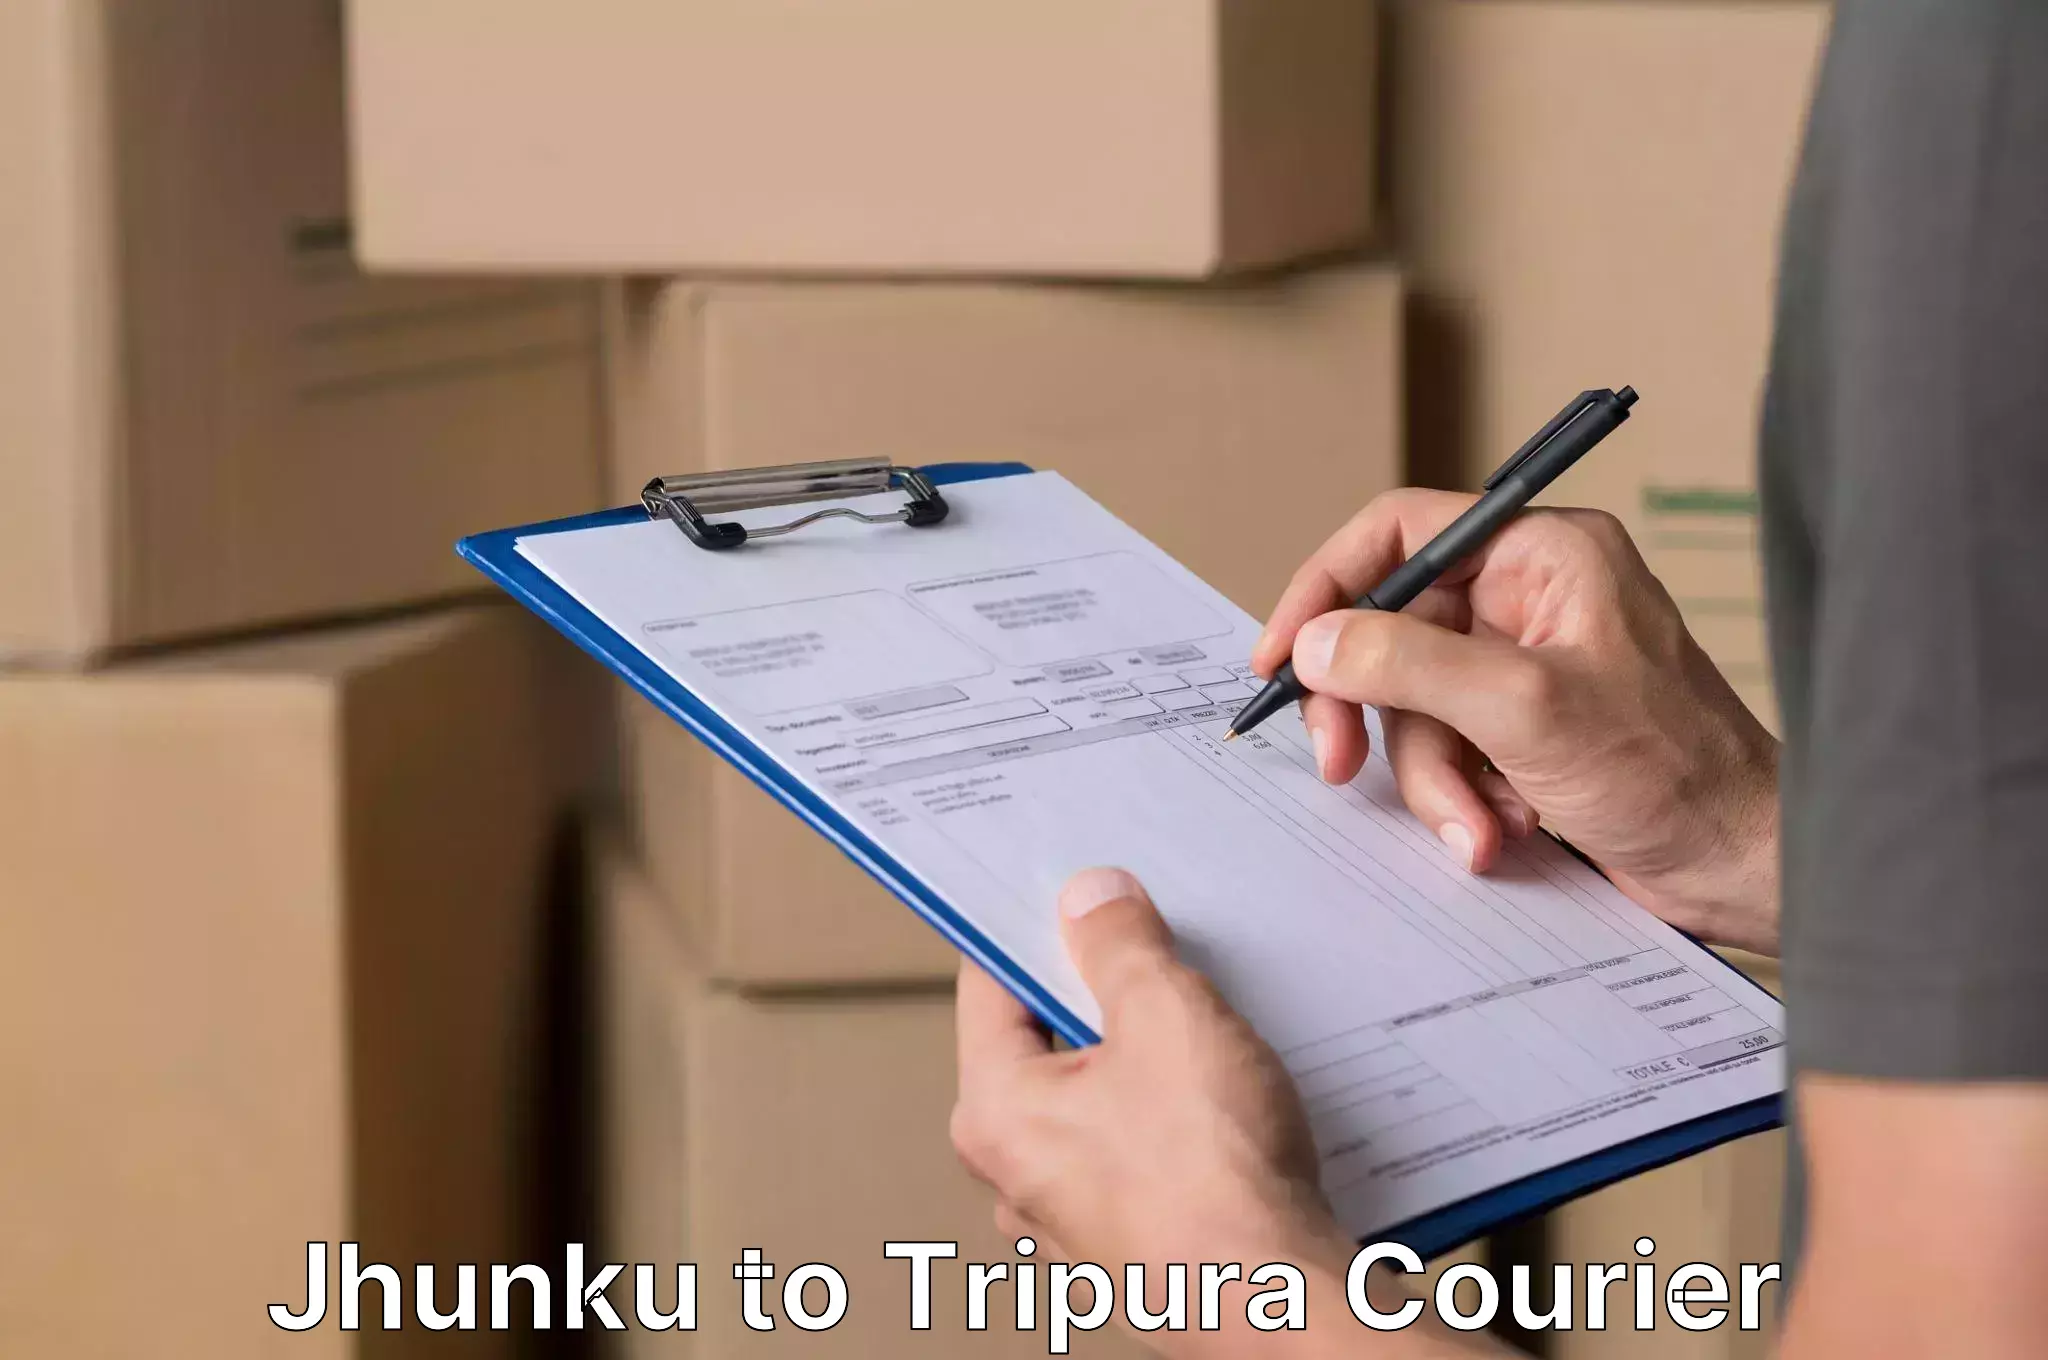 Customized moving experience Jhunku to Tripura